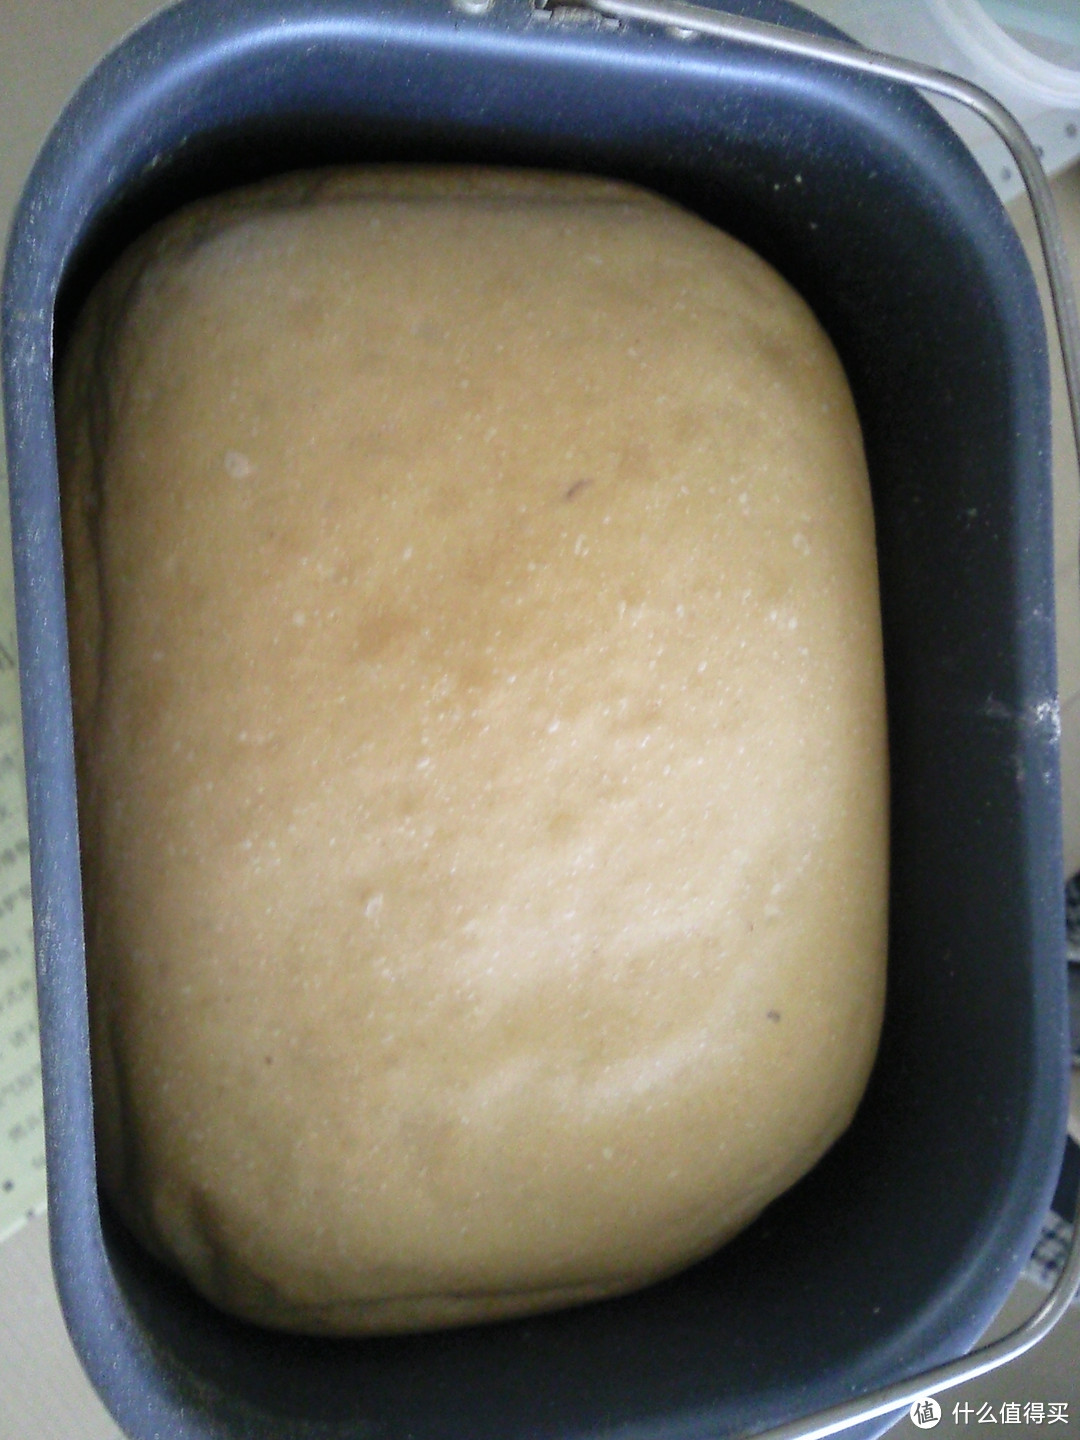 自制面包教程 连载二：三种面包做法和面包机使用问题答疑